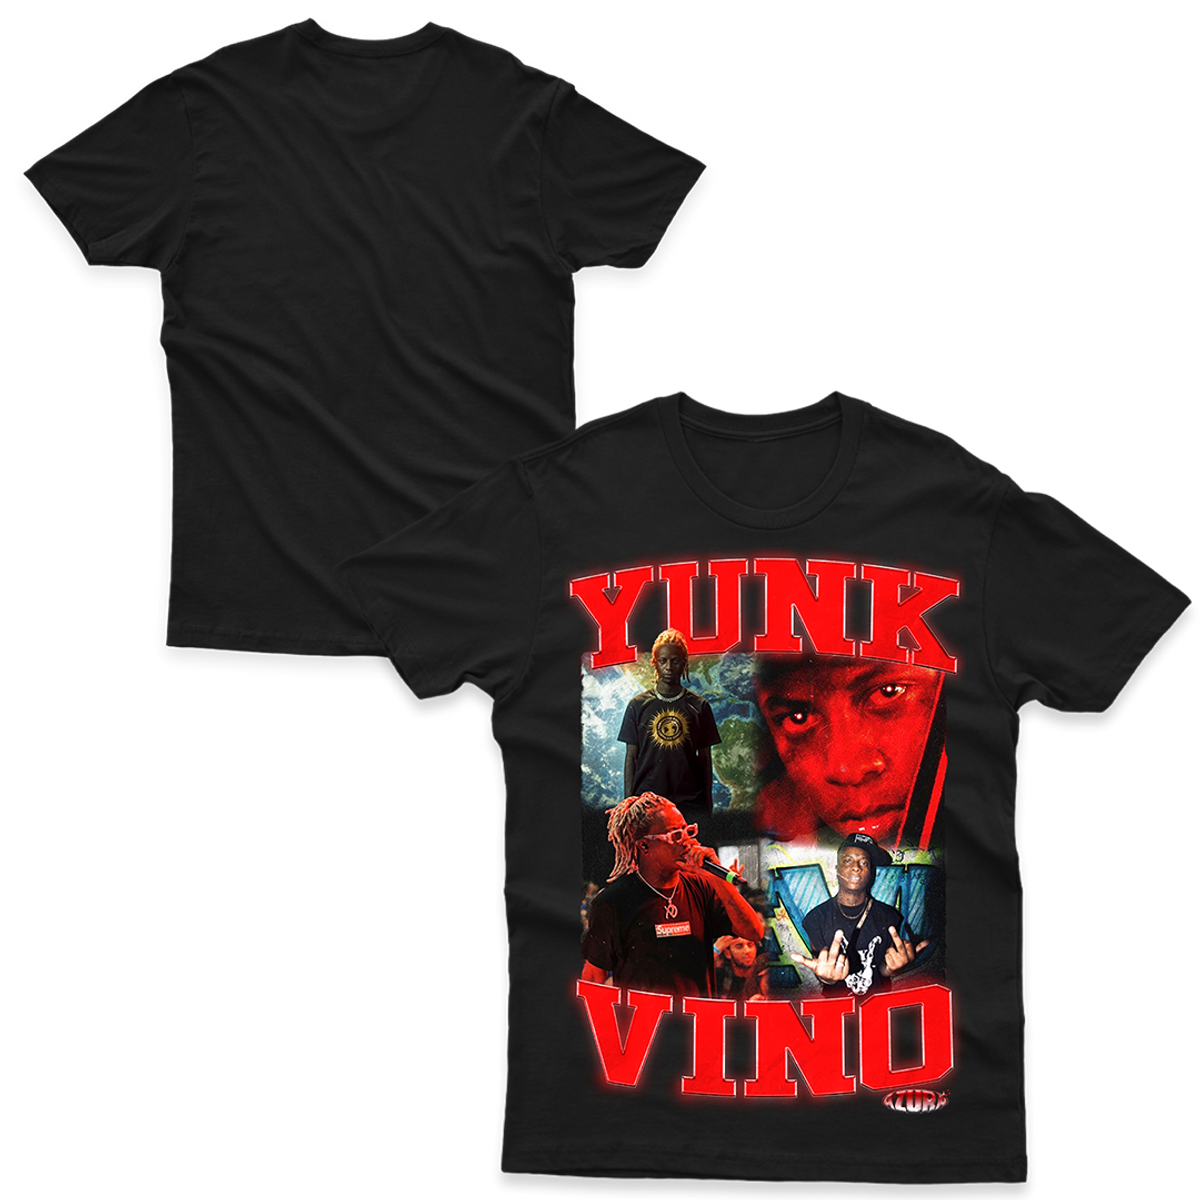 Nome do produto: Yunk Vino - VLIFE